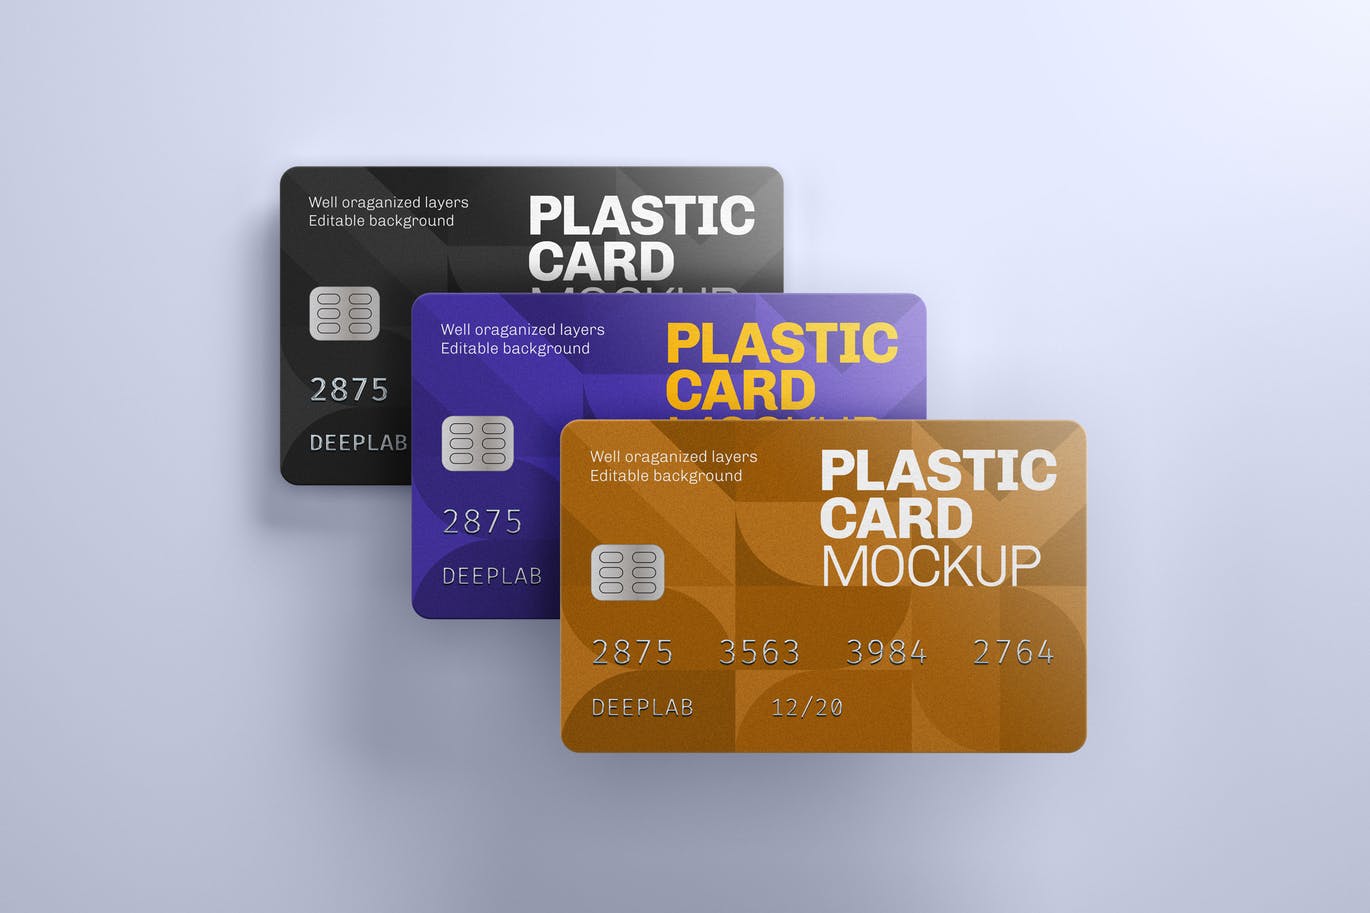 A plastic card mockup set